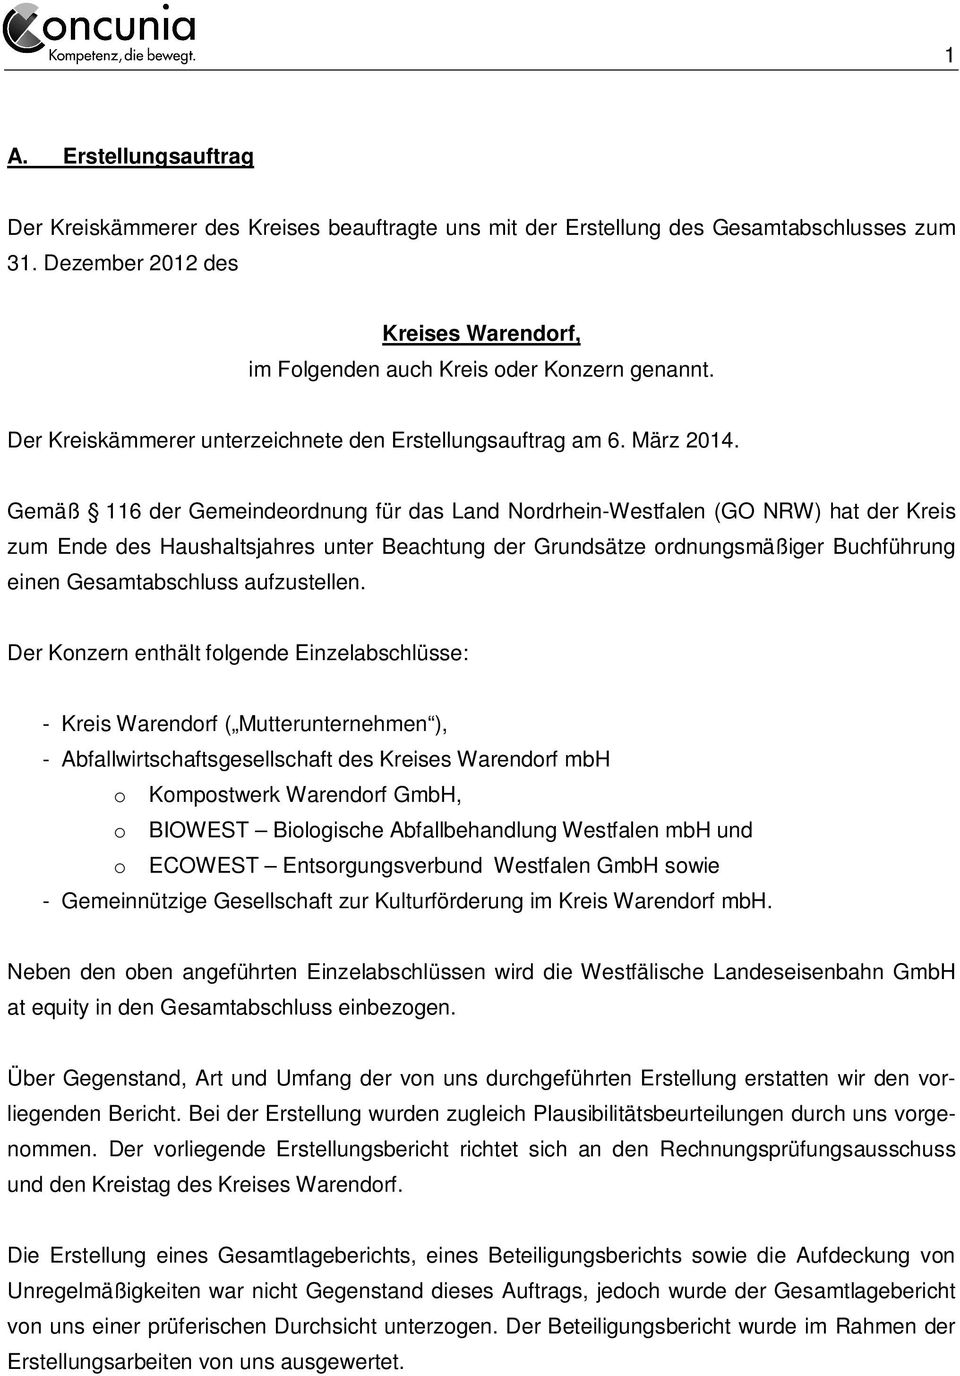 Gemäß 116 der Gemeindeordnung für das Land Nordrhein-Westfalen (GO NRW) hat der Kreis zum Ende des Haushaltsjahres unter Beachtung der Grundsätze ordnungsmäßiger Buchführung einen Gesamtabschluss